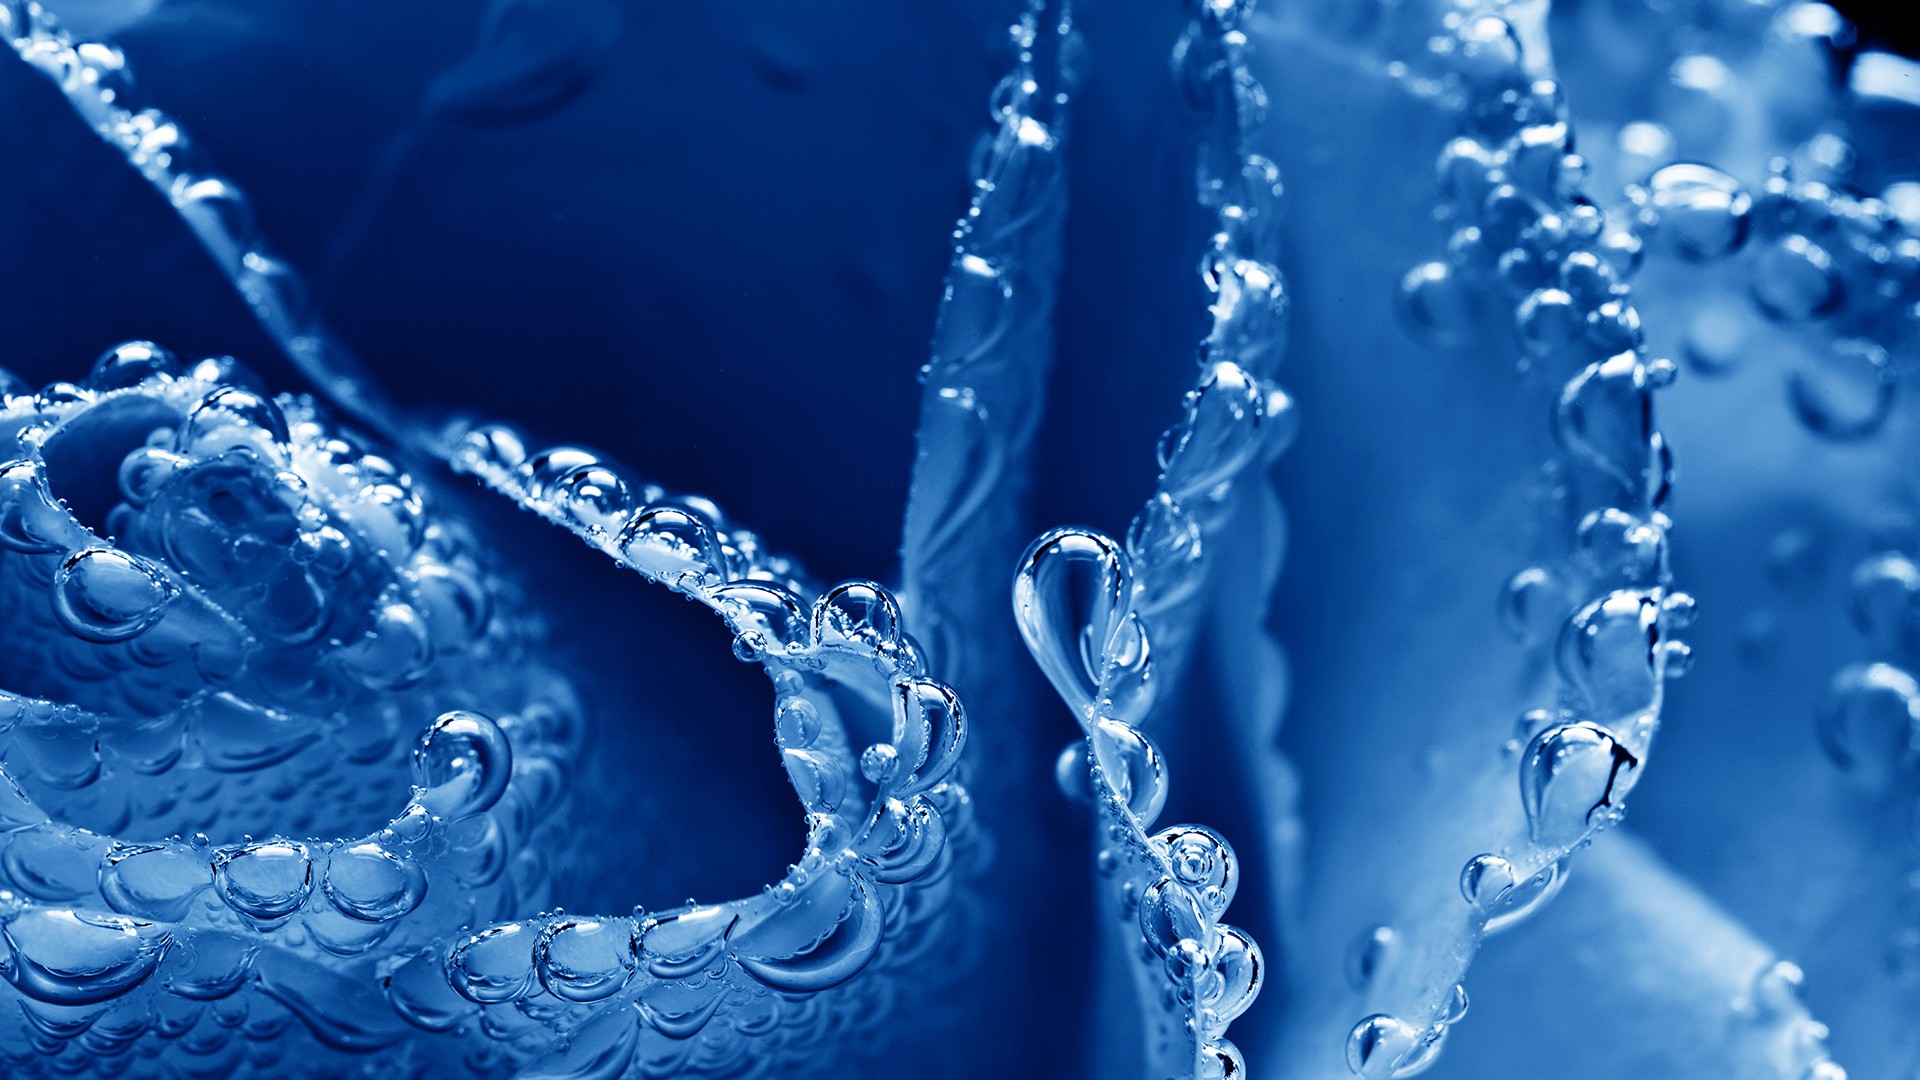 Liquid Digital Art Blue Water Petals Water Drops Flower Petals 1920x1080